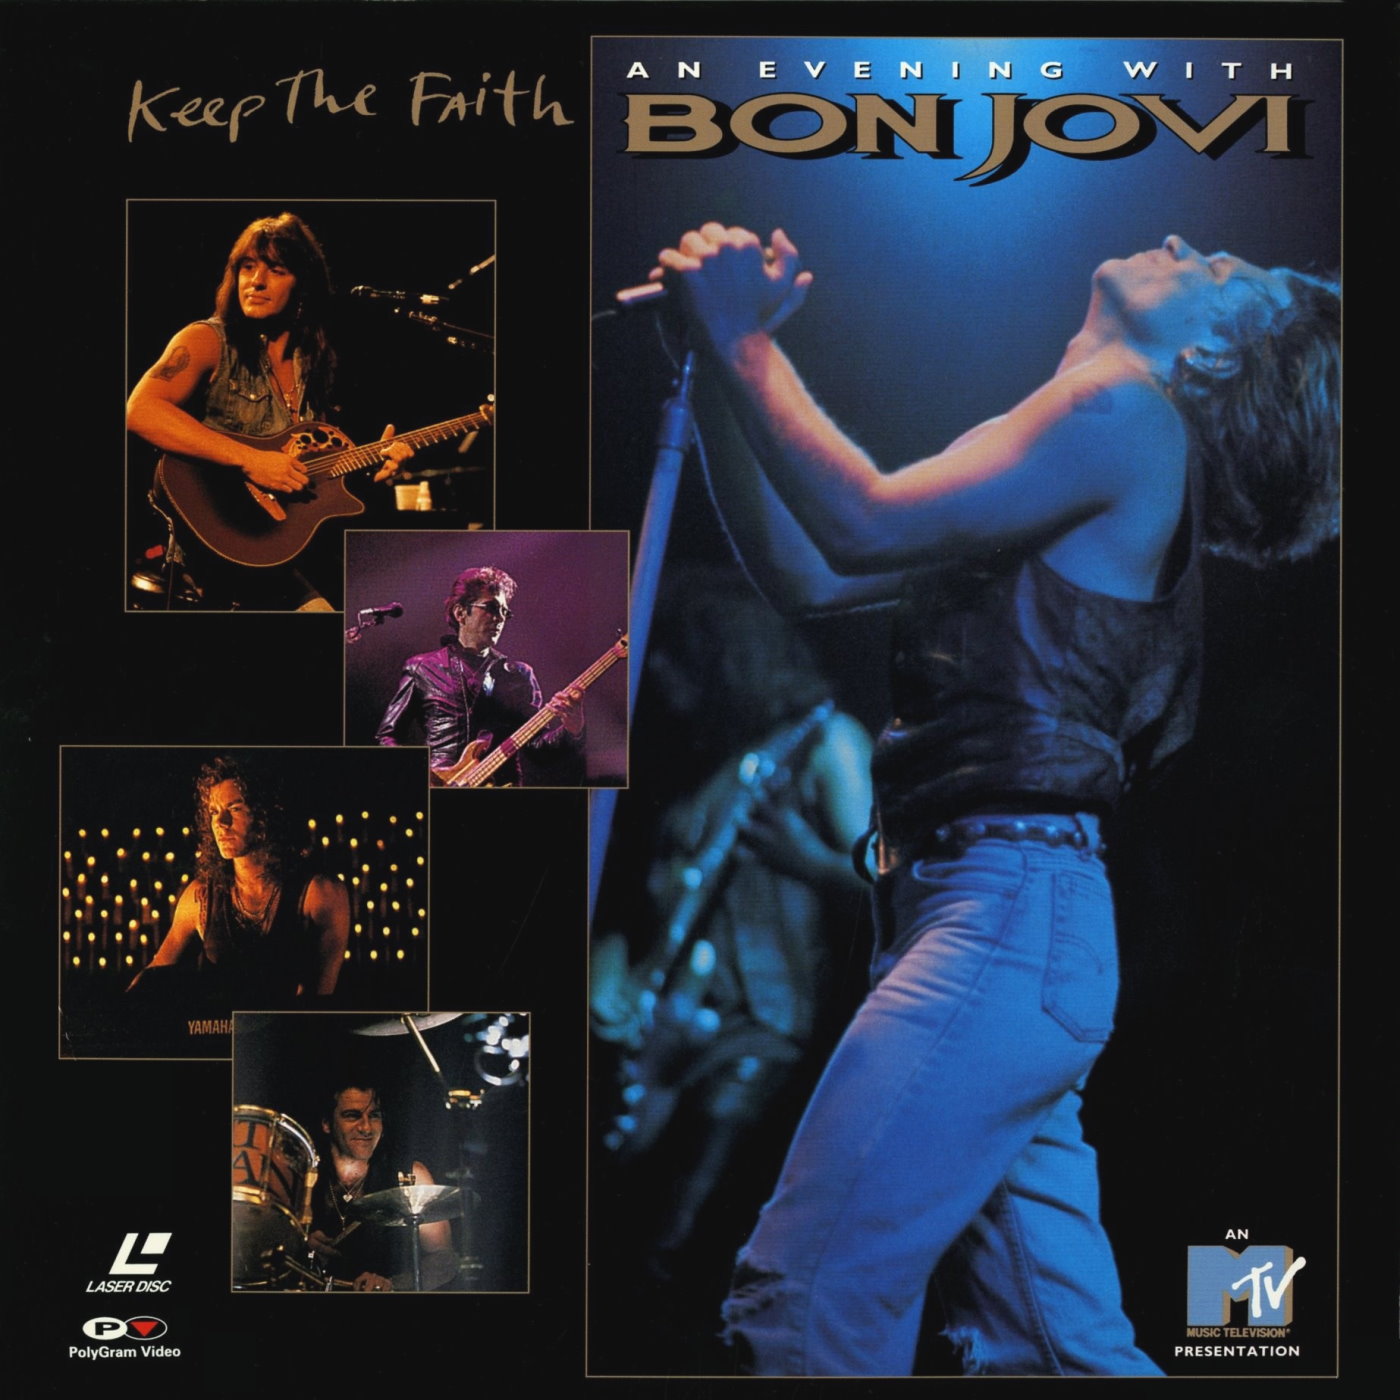 Cover - Keep The Faith - An Evening With Bon Jovi.jpg